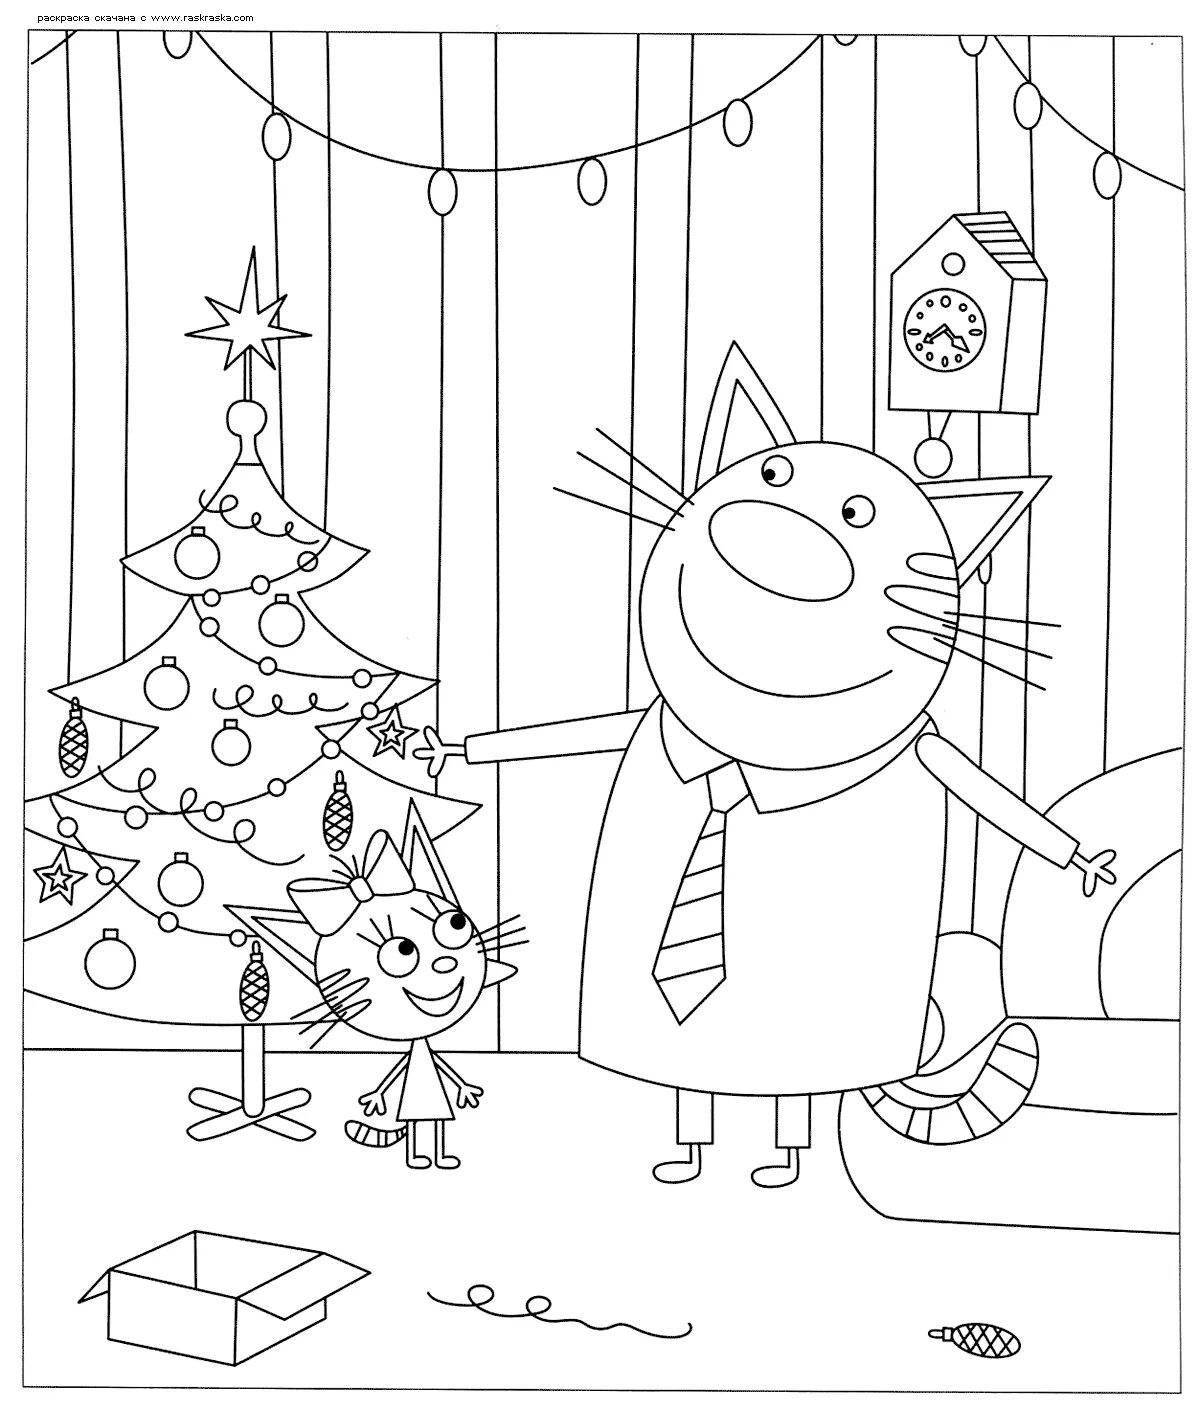 Ярко раскрашенная новогодняя раскраска «три кота»